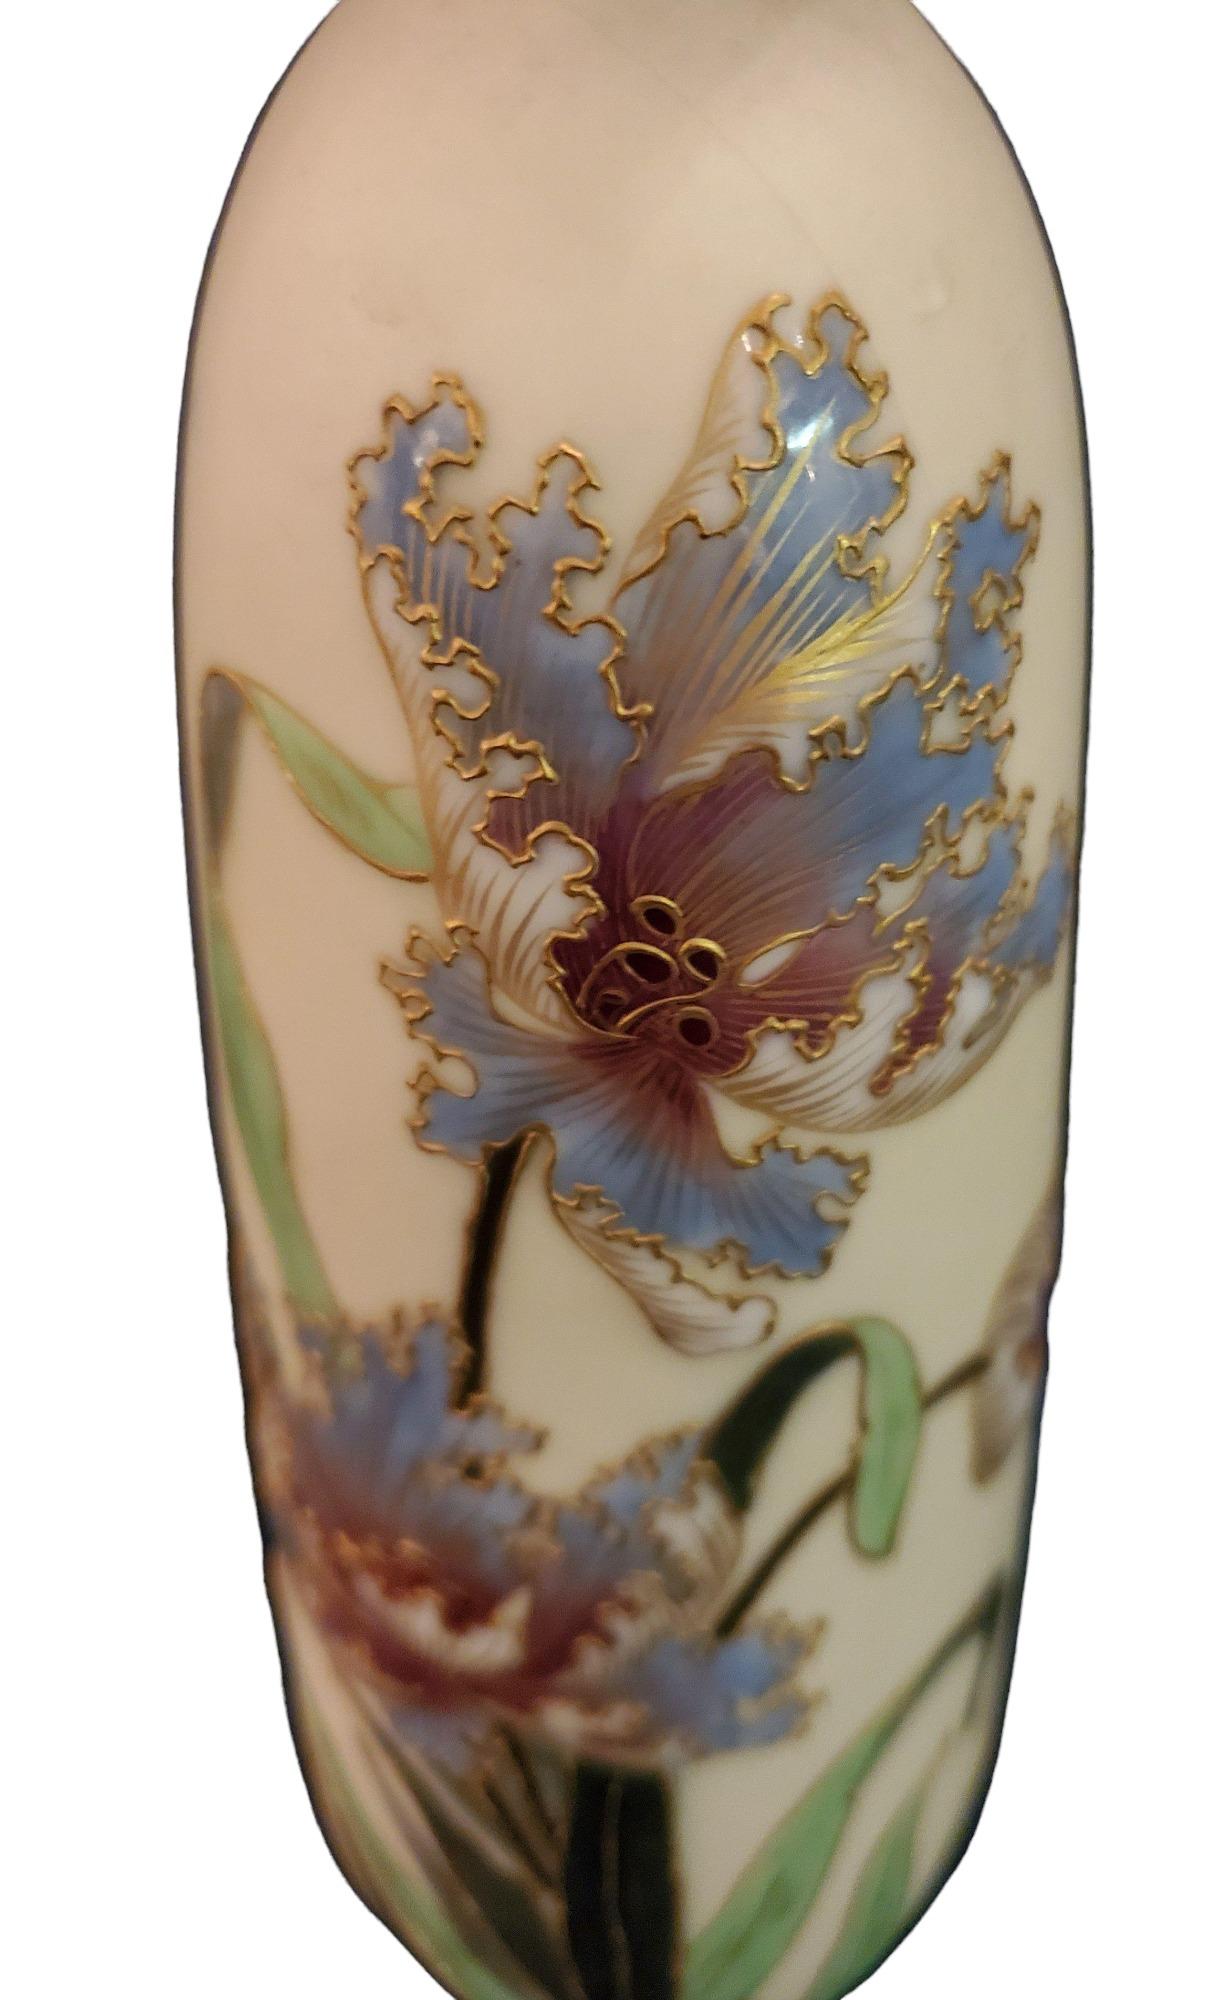 Vase à orchidées en porcelaine allemande des années 1940. Magnifique motif floral avec des contours dorés sur les fleurs et les feuilles. le bord présente une coulure de peinture dorée.

Un vase au design élégant.
